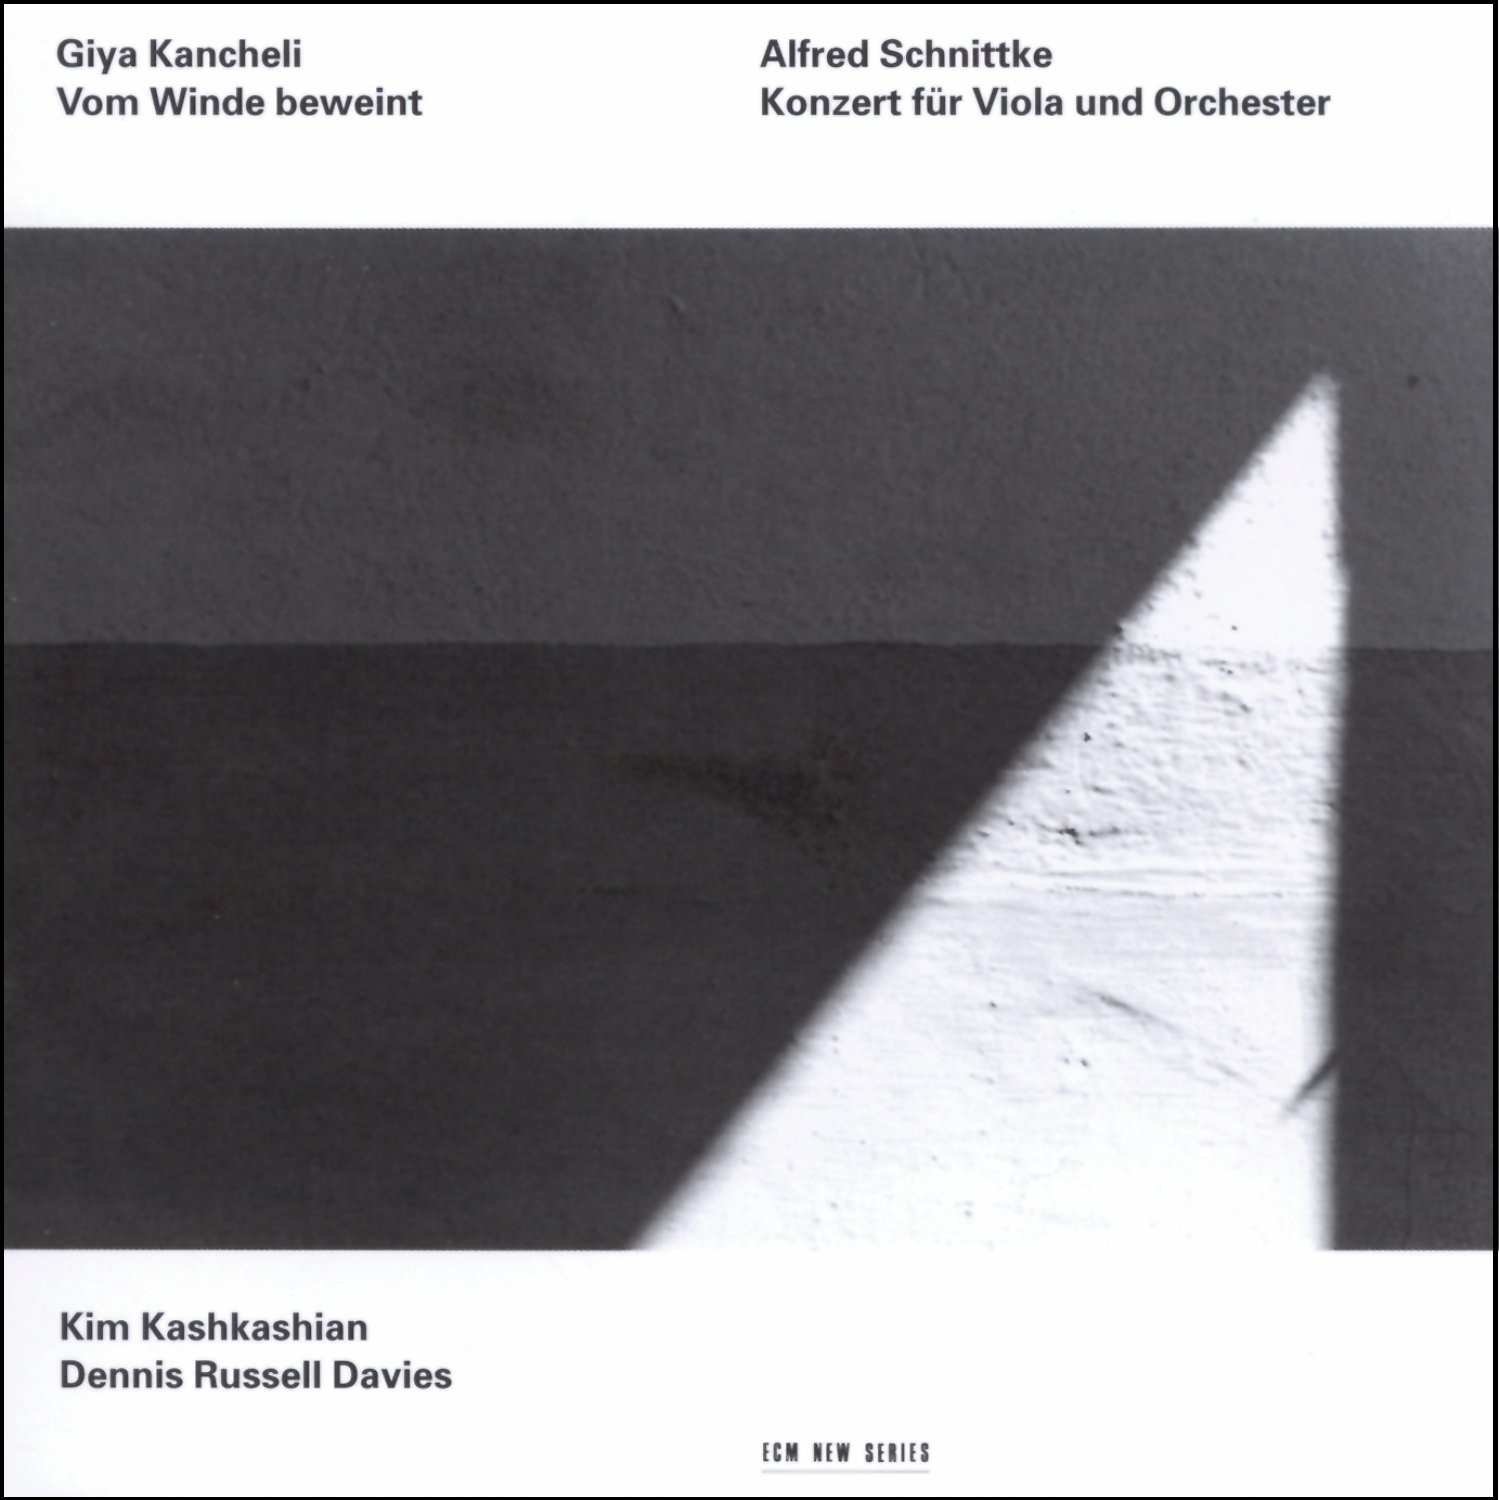 <p>Giya Kancheli/ Liturgie “Vom Winde beweint”<br />
Alfred Schnittke/ Viola Concerto</p>
